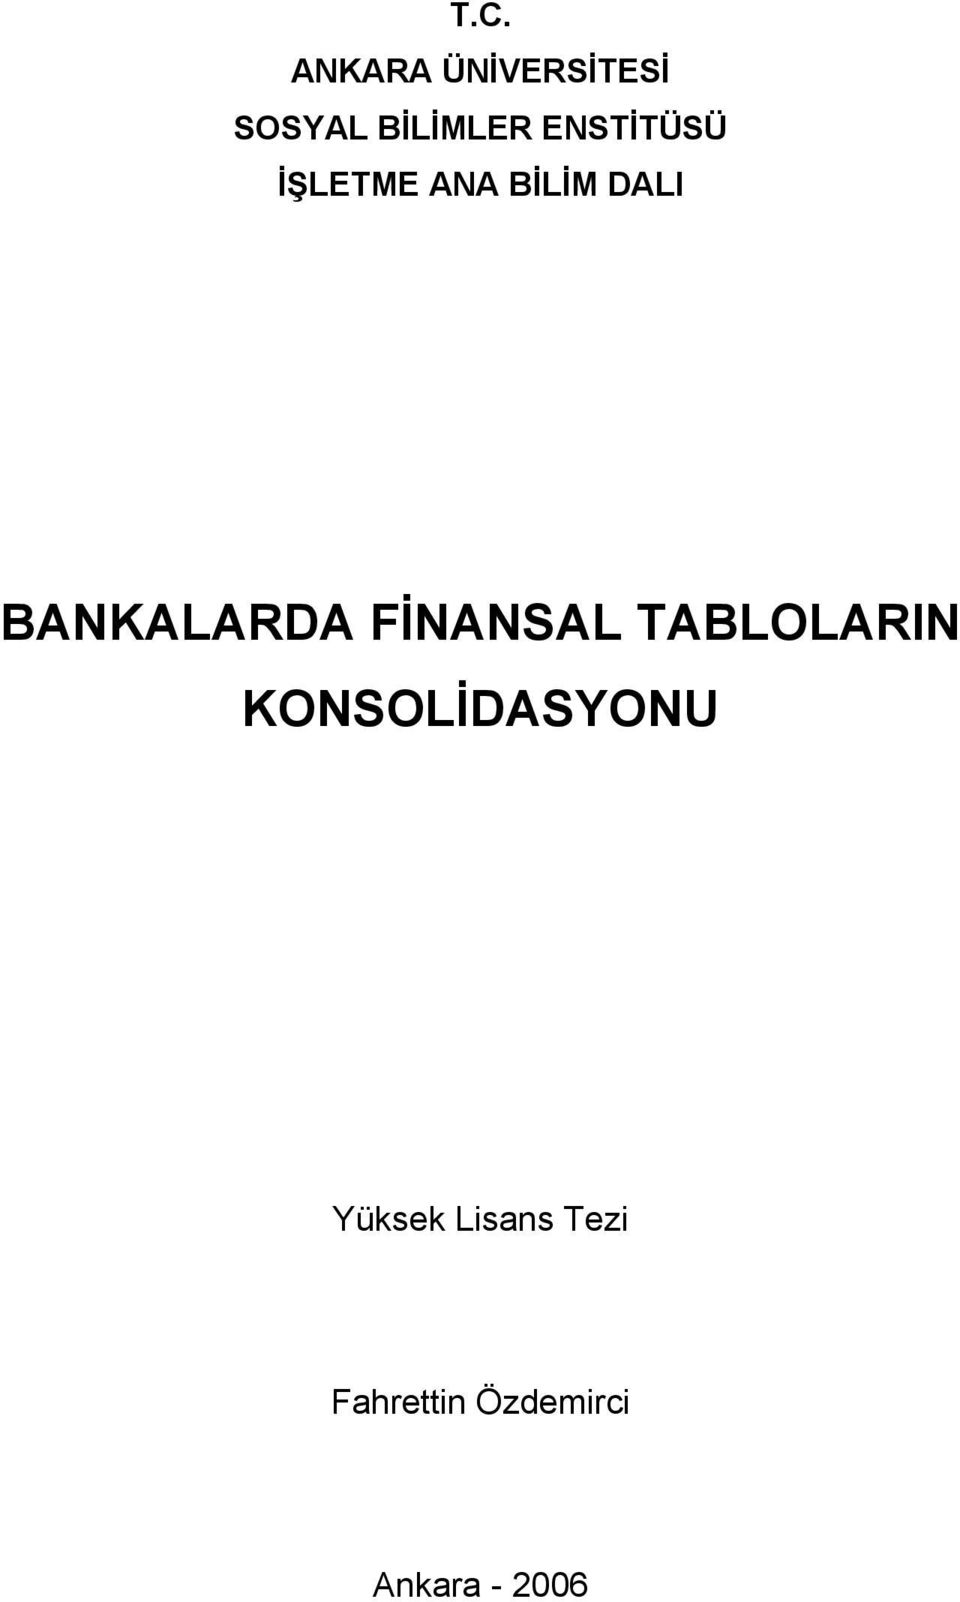 BANKALARDA FİNANSAL TABLOLARIN